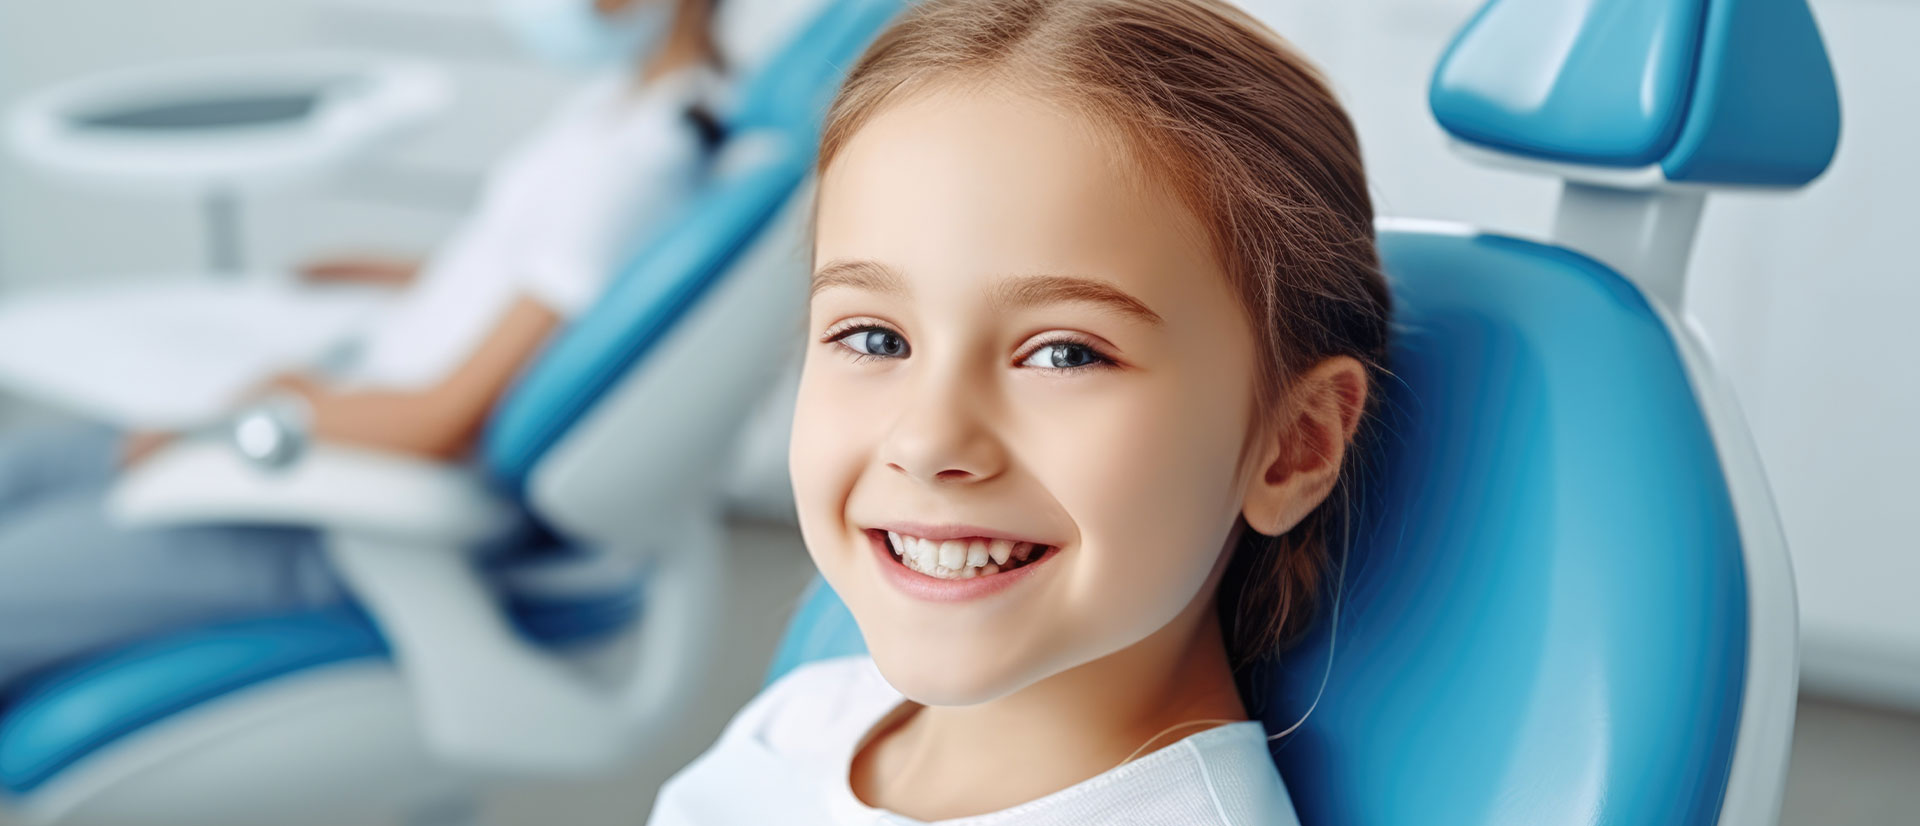 West Islip Orthodontics | Orthodontics for Children, Mouthguards and Sleep Apnea